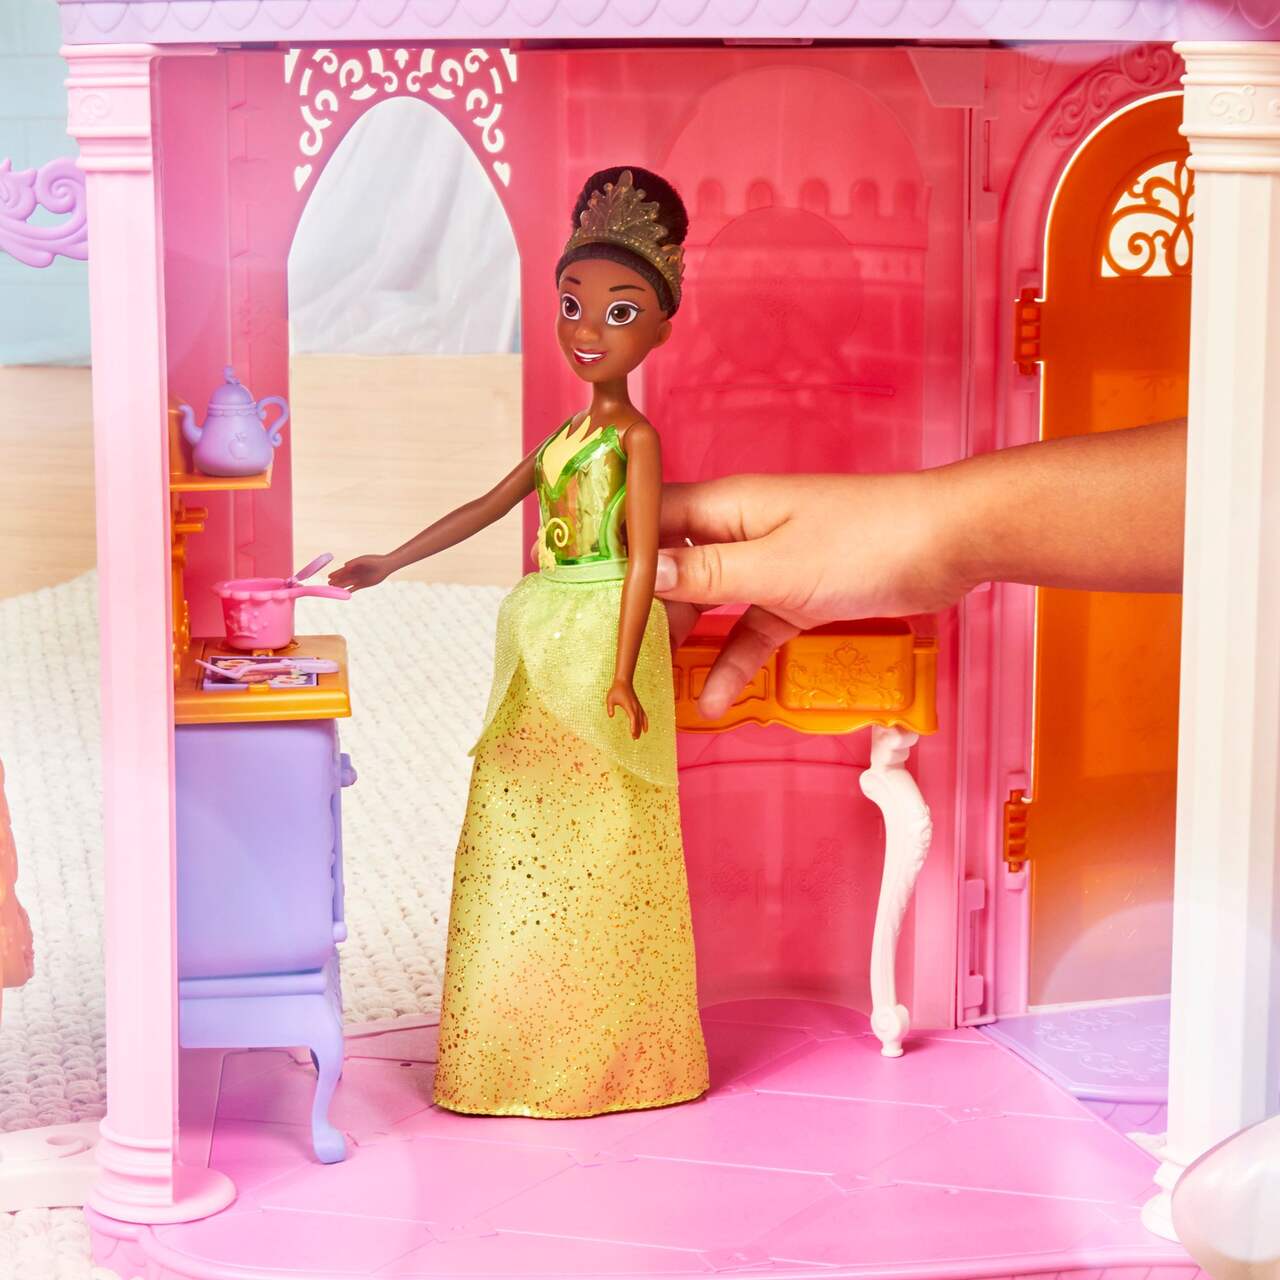 Grande poupée peluche Princesse Cendrillon 55 cm Disney Store chez